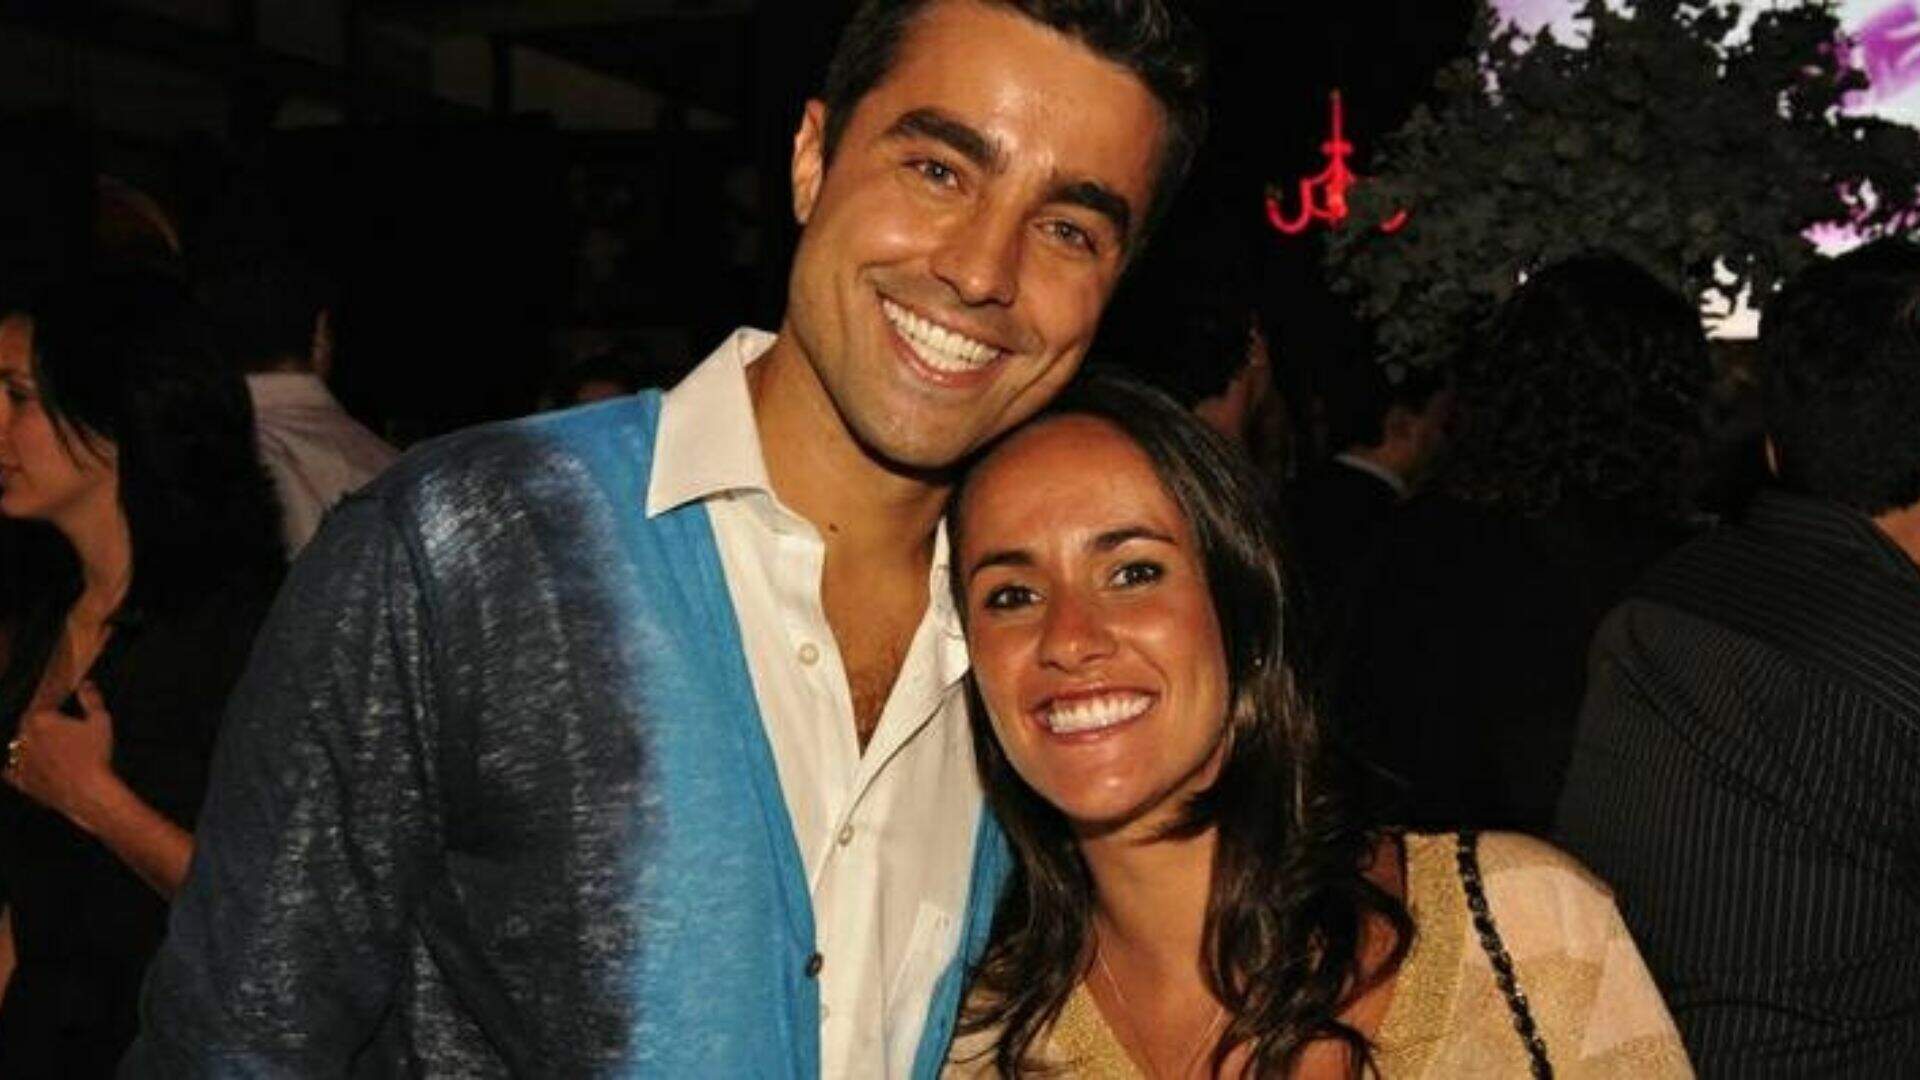 Ricardo Pereira e sua esposa, Francisca, anunciam casamento previsto para 2023 - Metropolitana FM